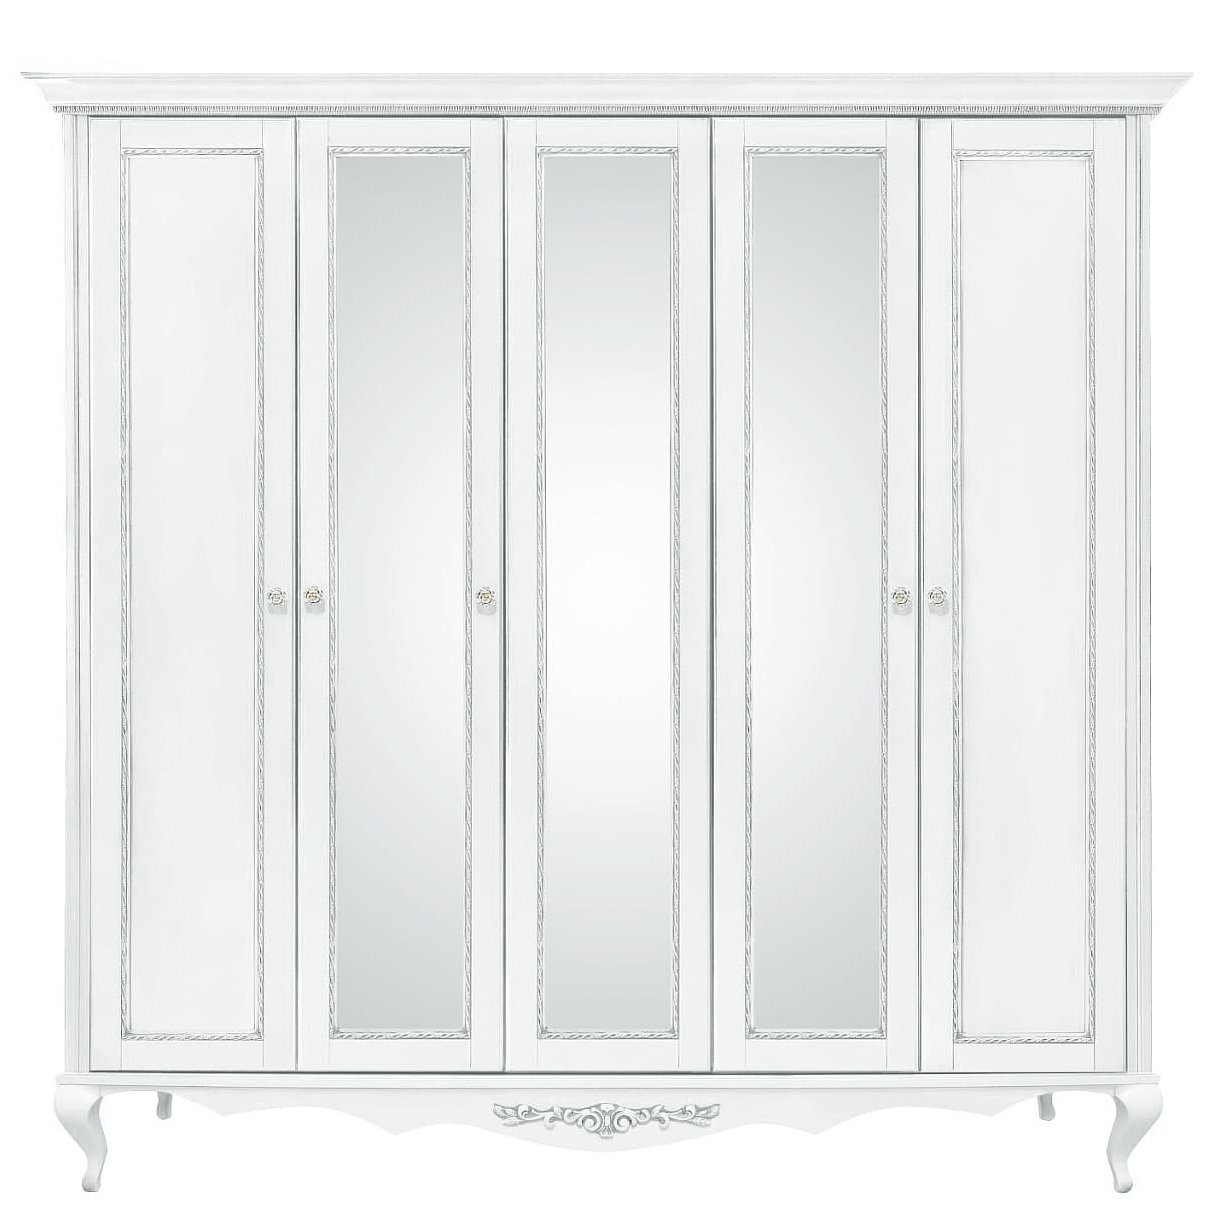 Шкаф платяной Timber Неаполь, 5-ти дверный с зеркалами 249x65x227 см цвет: белый с серебром (T-525)T-525